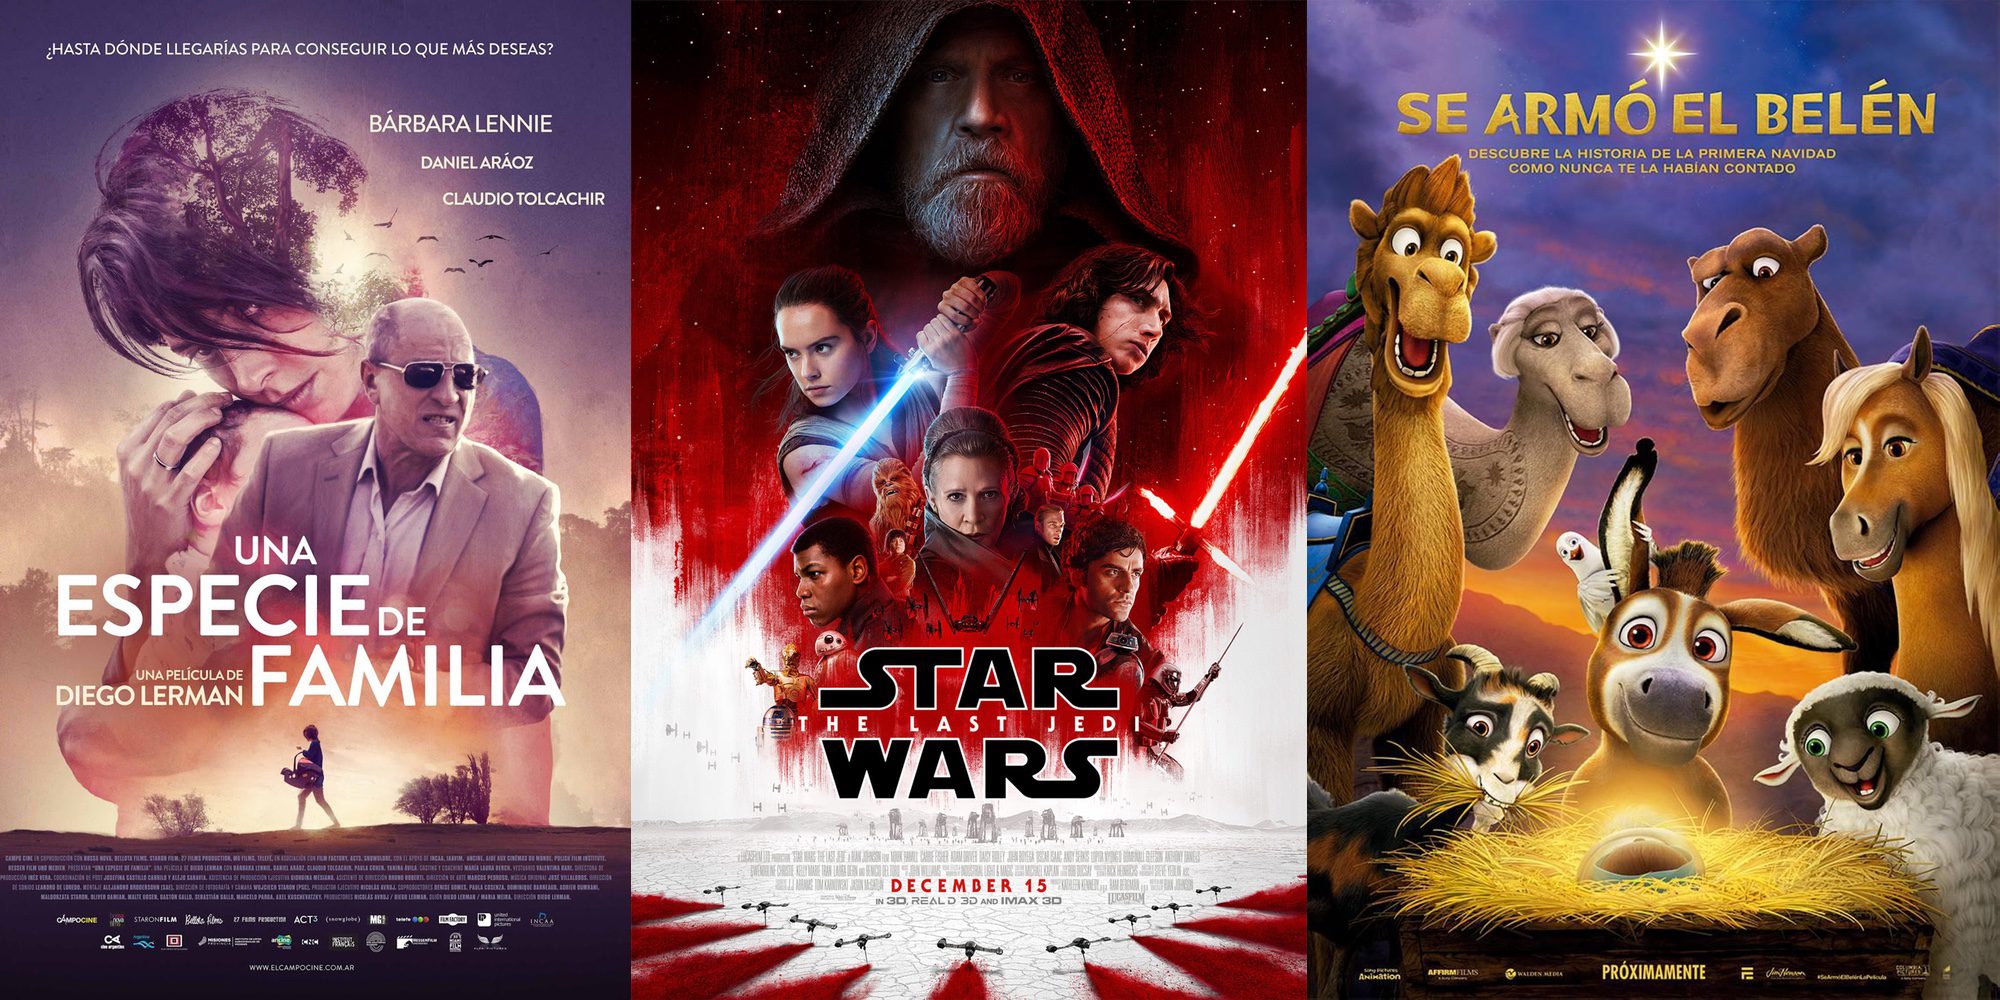 'Star Wars: Los últimos Jedi', 'Se armó el Belén' y 'Una especie de familia' protagonizan lo nuevo del cine